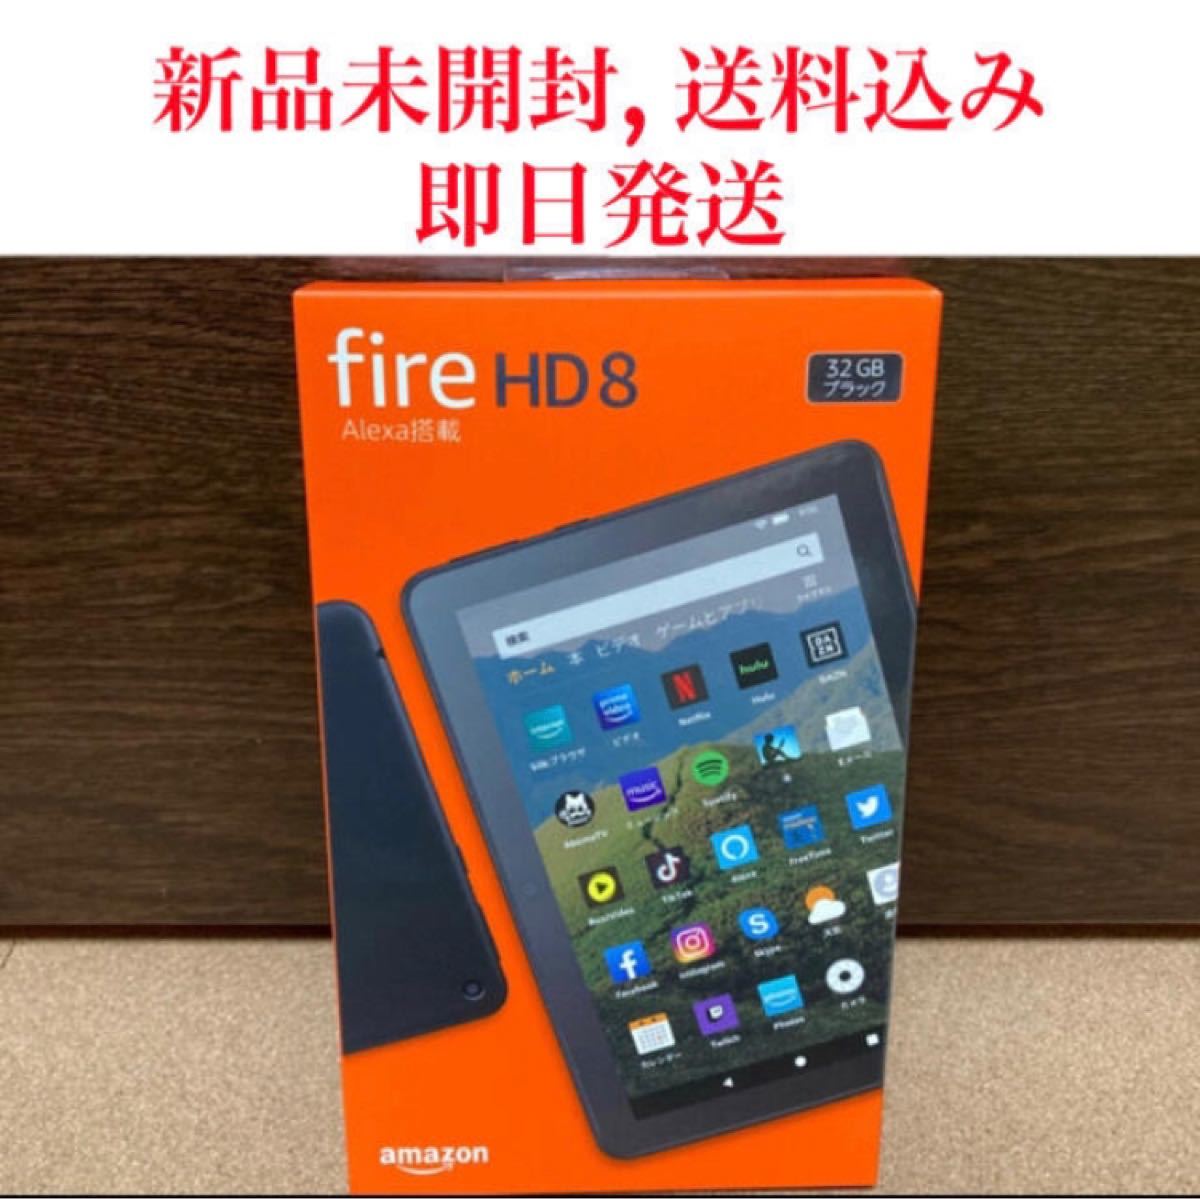 品質一番の fireHD8 タブレット 32GB elipd.org